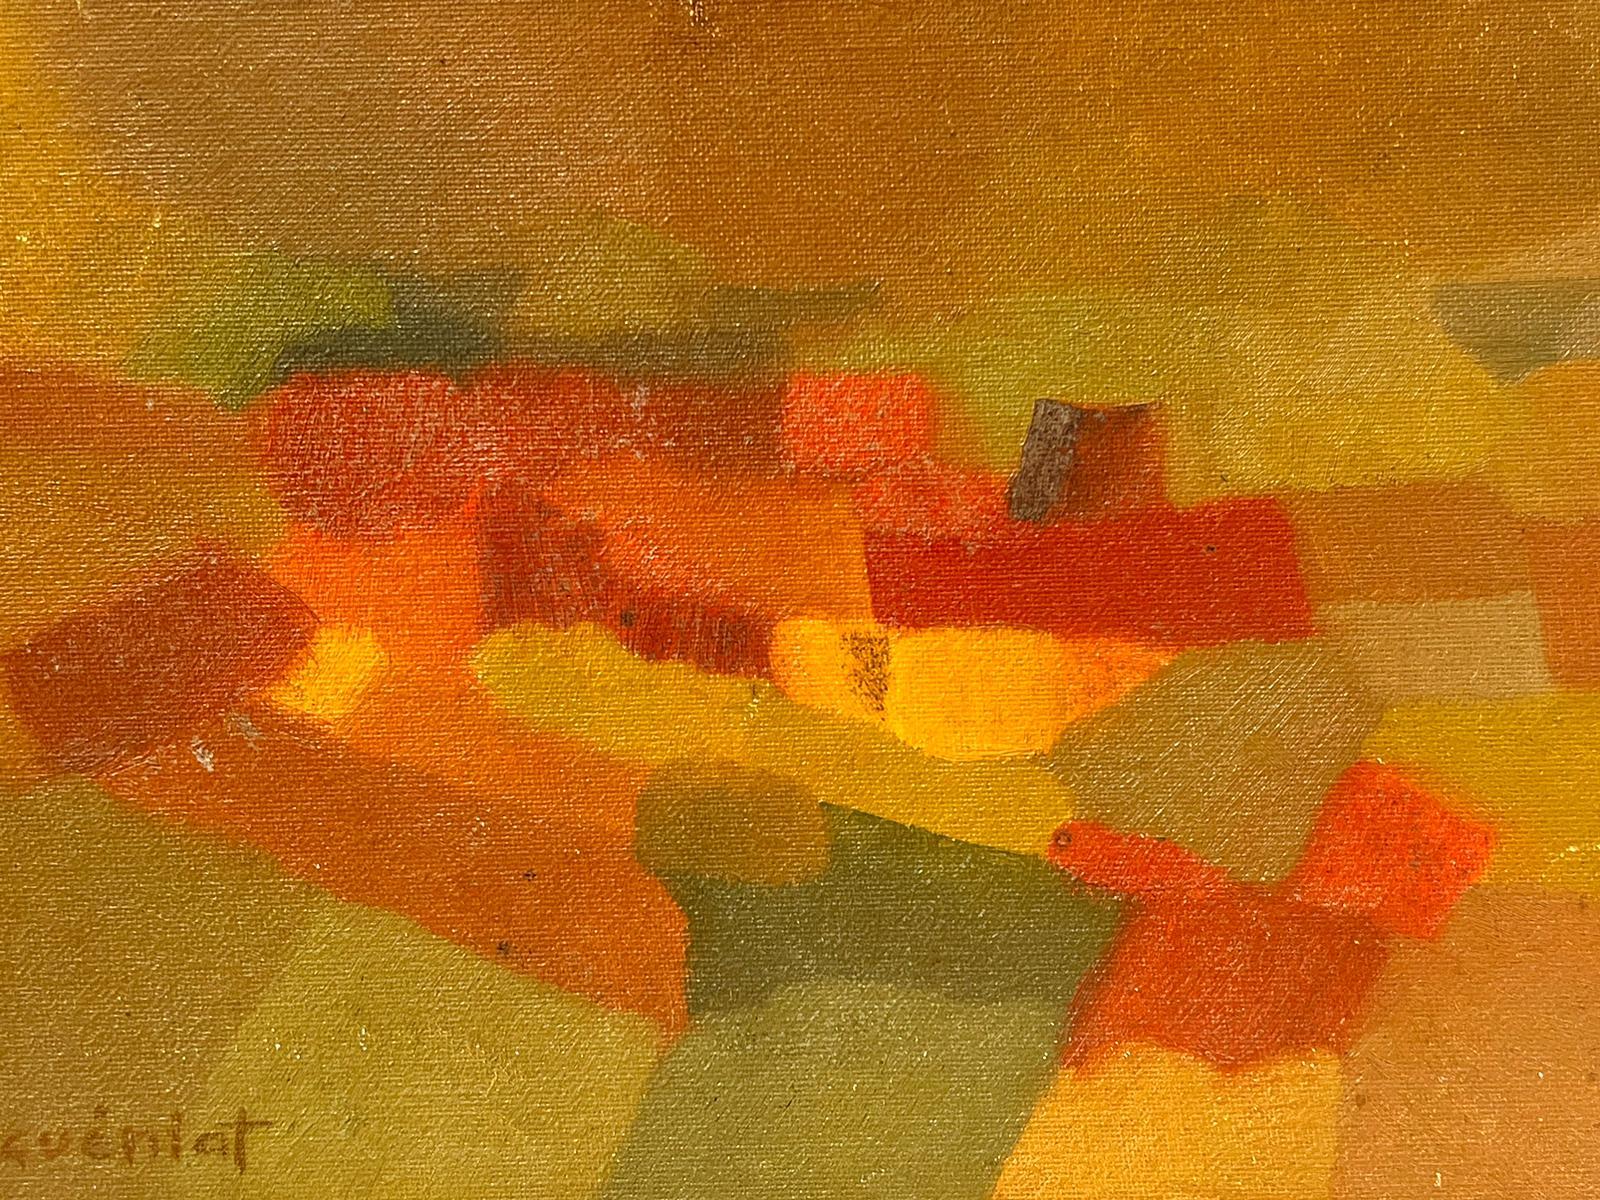 Peinture à l'huile cubiste française des années 1950, rouge, marron, ocre, tons sourds, encadrée